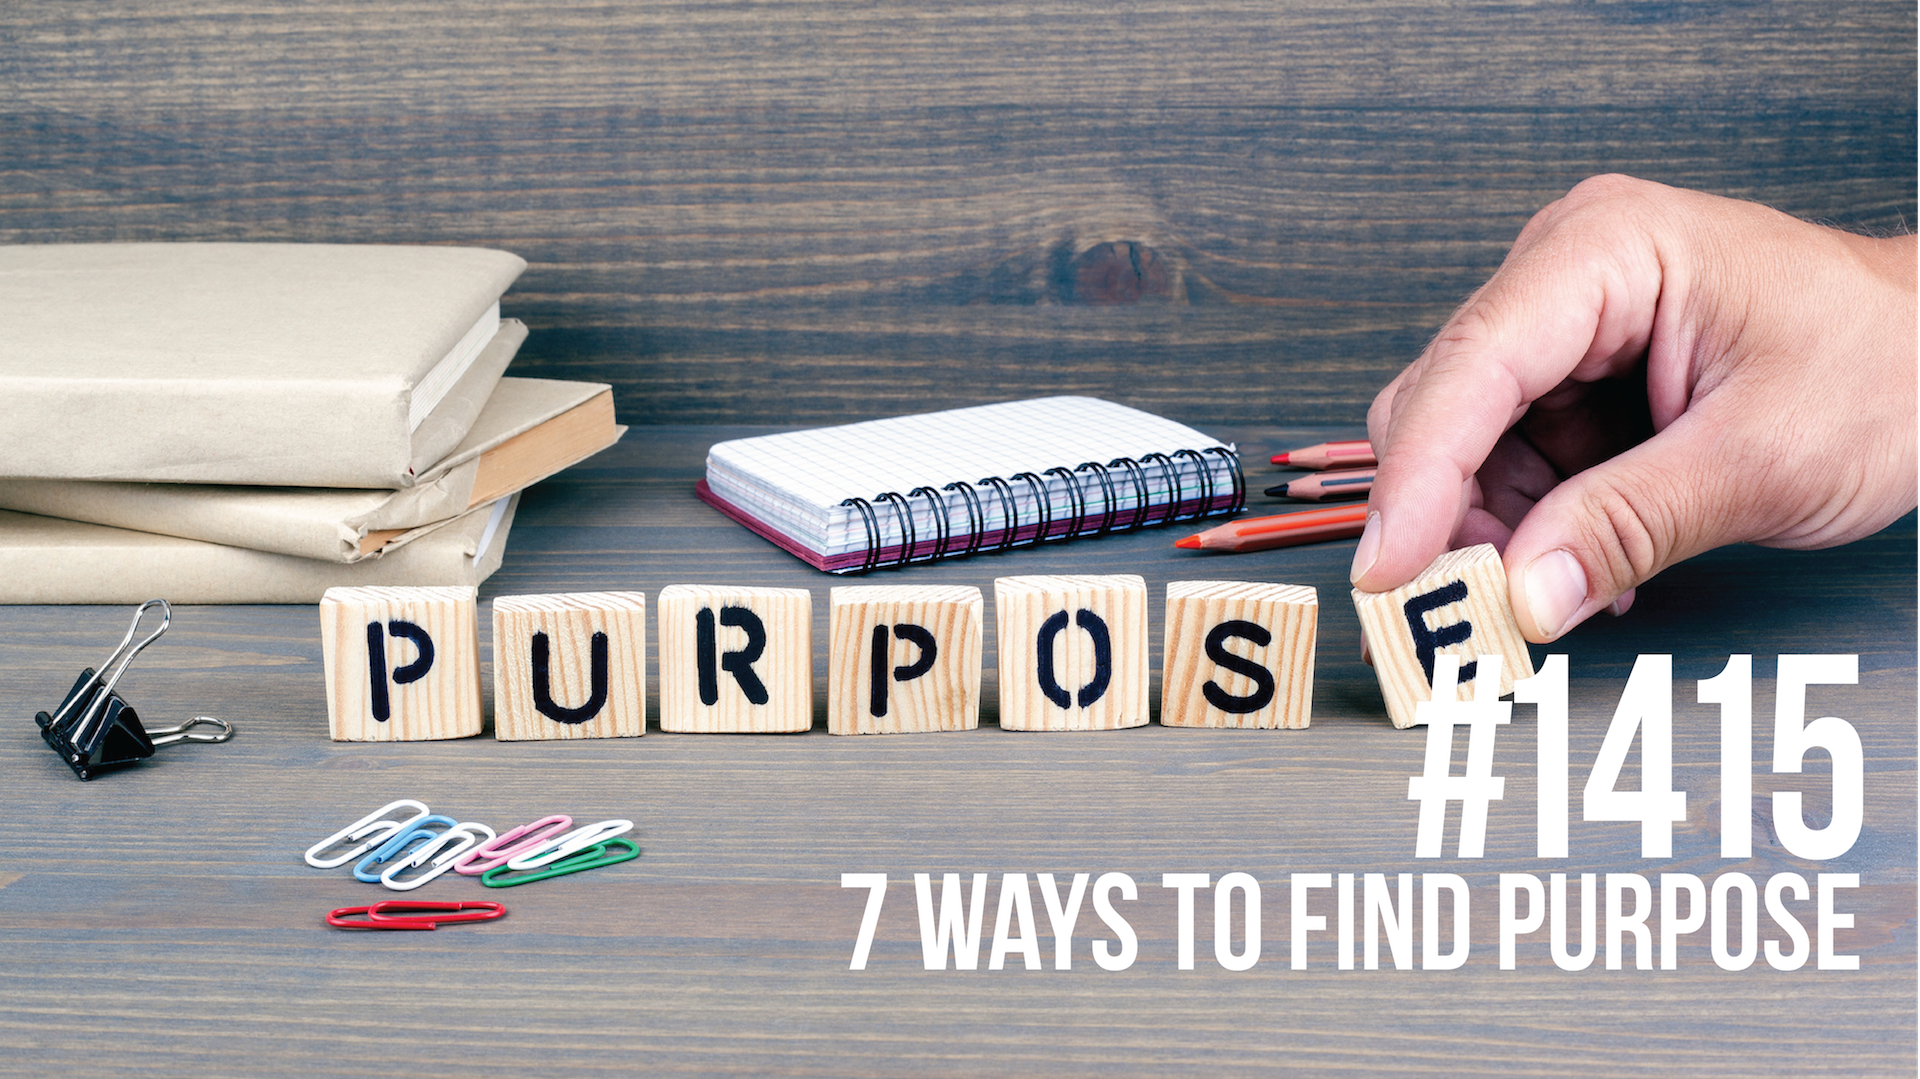 1415: 7 Ways to Find Purpose